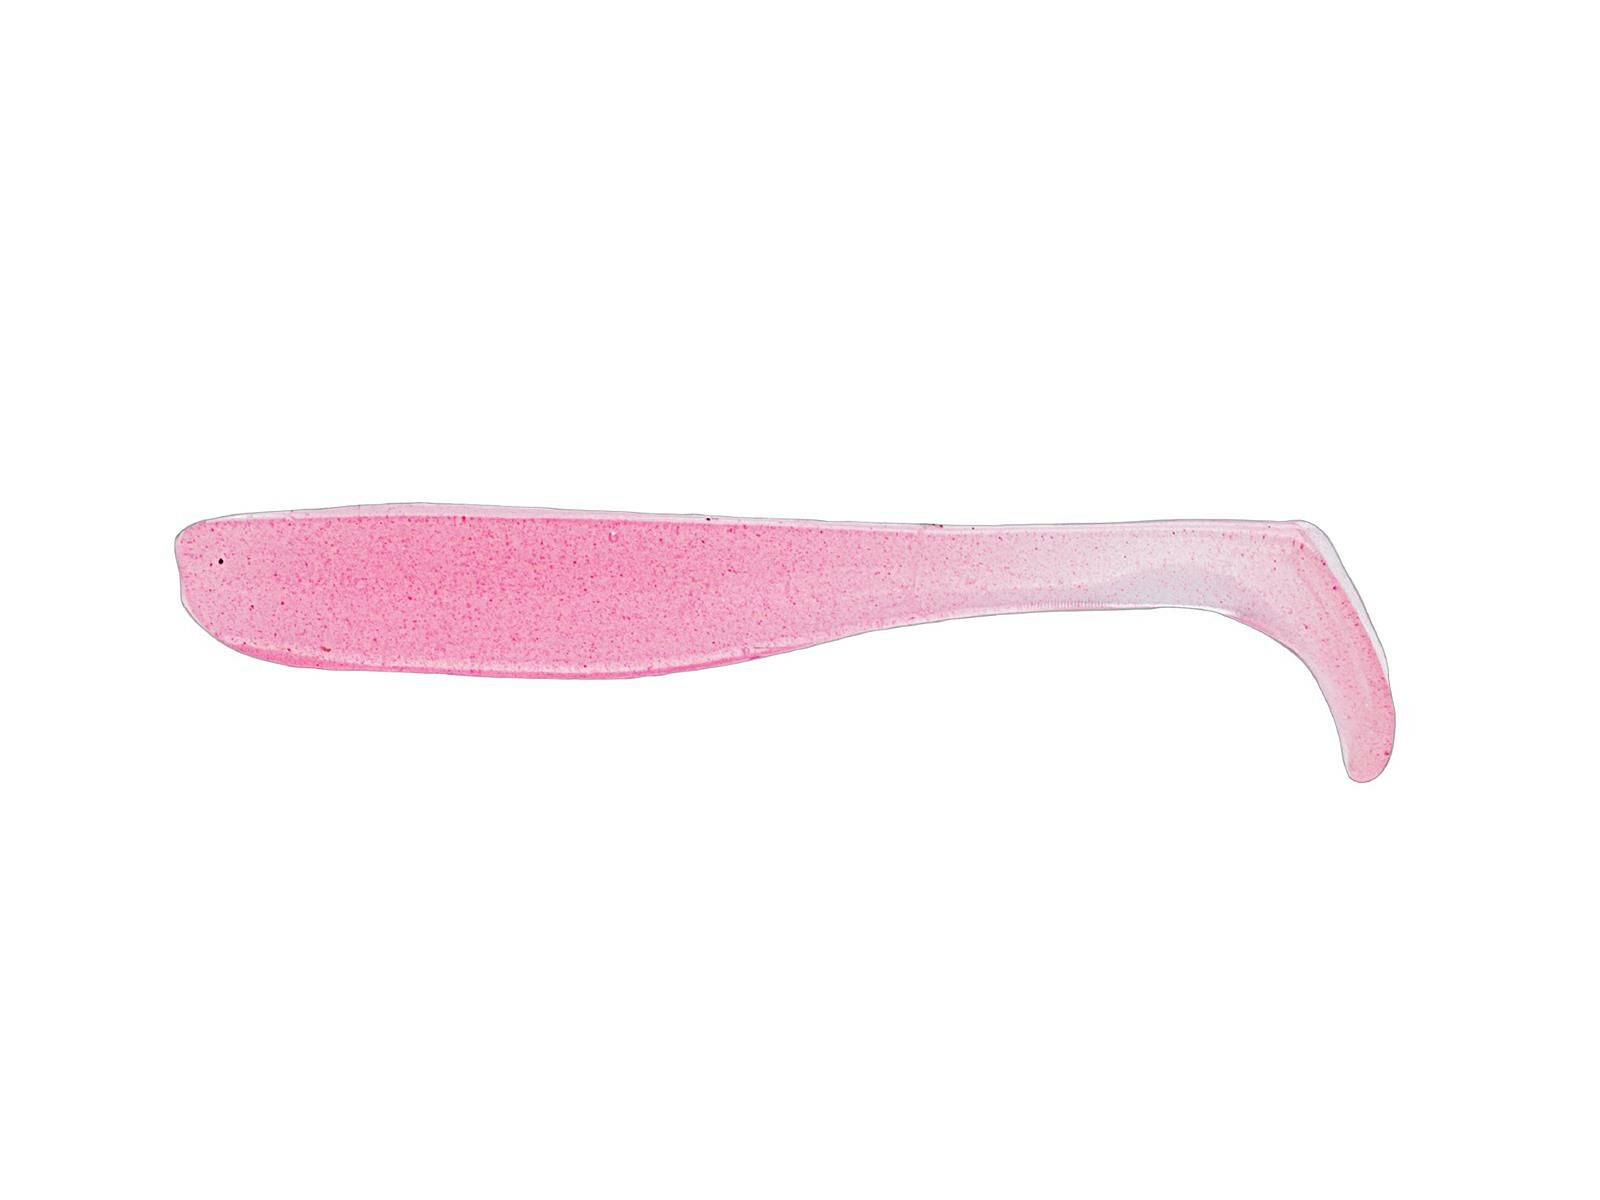 2.5" Slim Swimz - Pink Glow